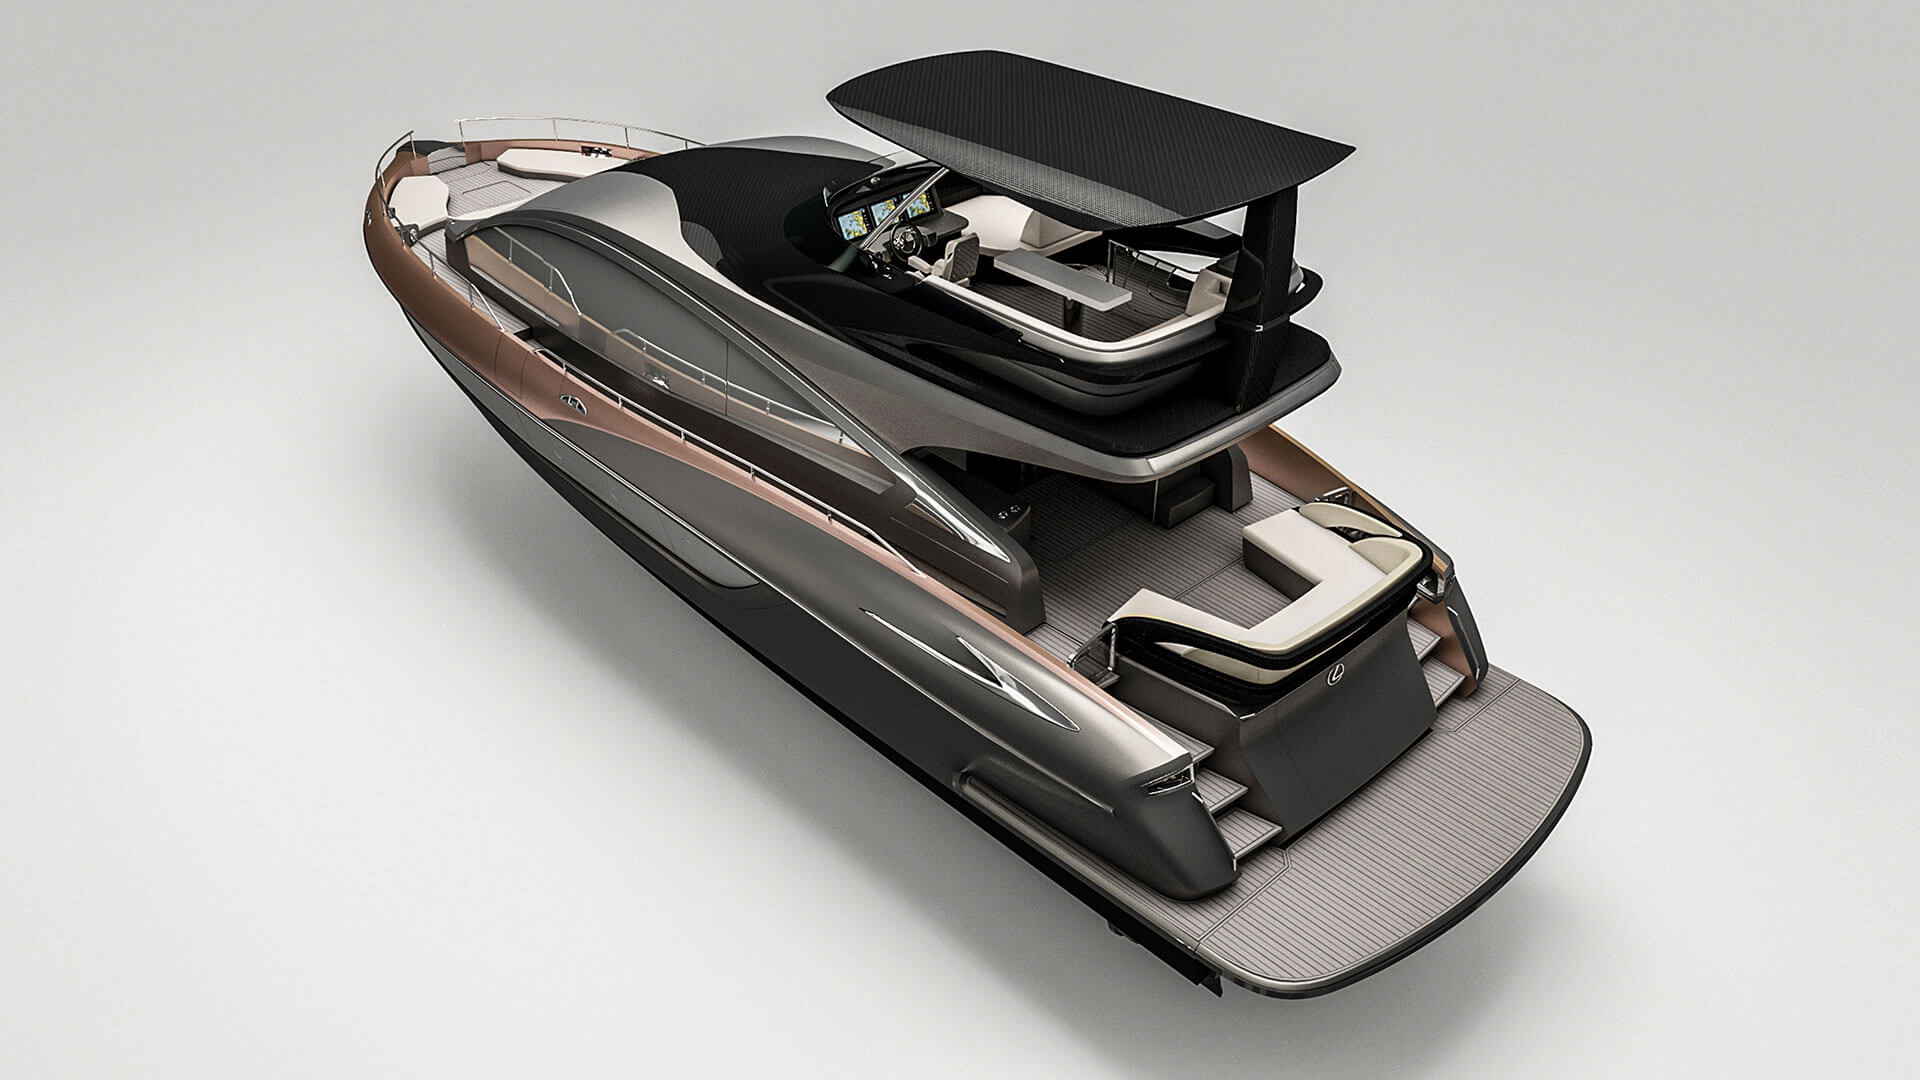 Премьера яхты Lexus LY 650: невероятное воплощение роскоши